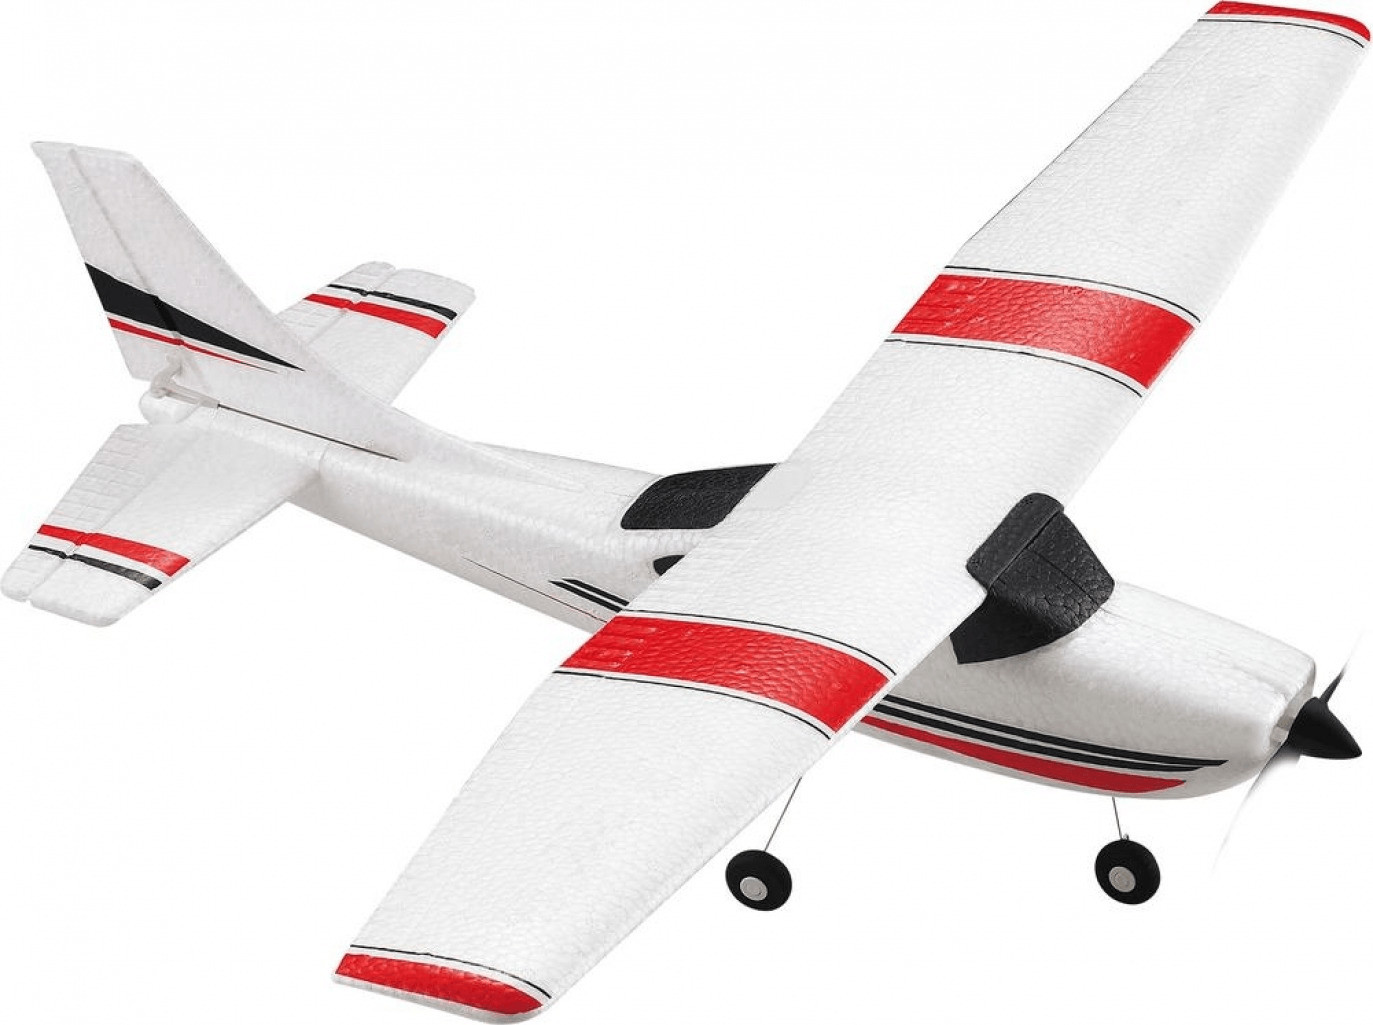 FLYBOTIC - Avion télécommandé rapide - X Twin Evo au meilleur prix